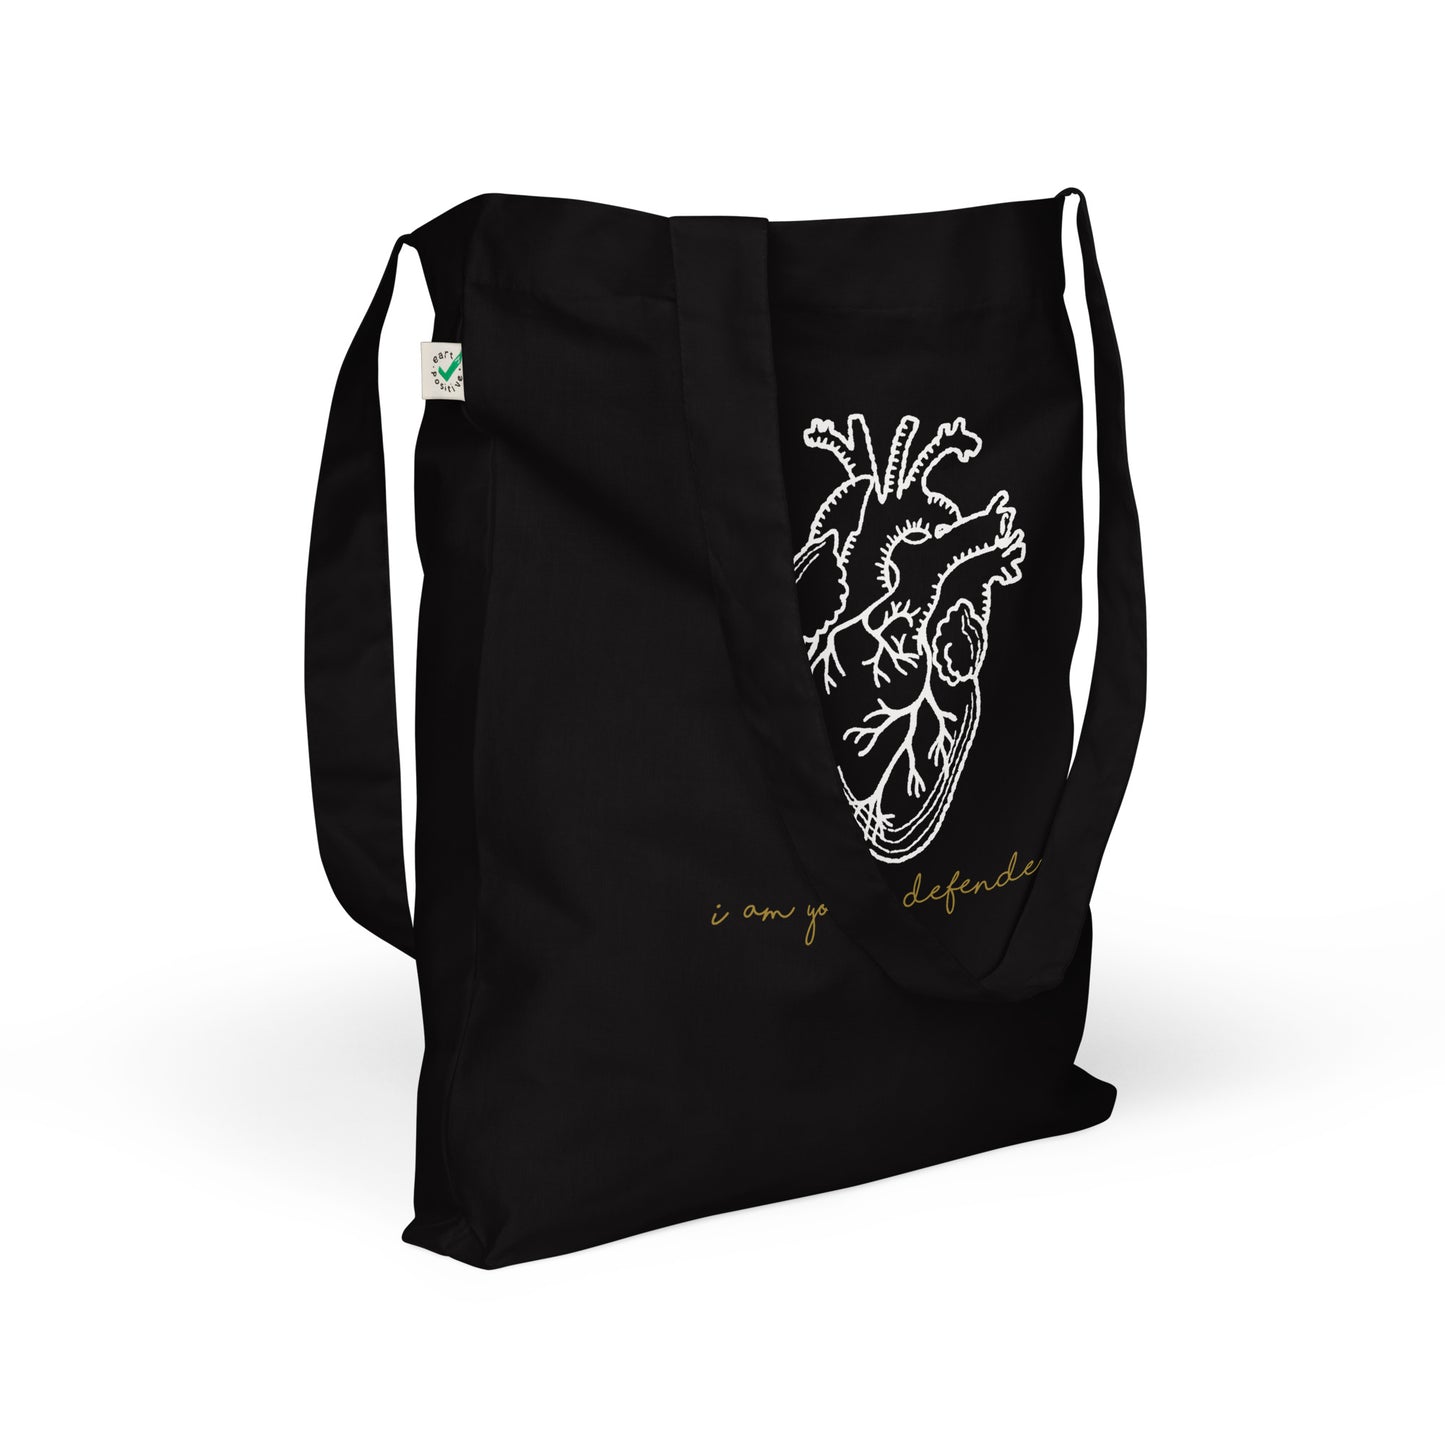 ELDR 'Defender' Organic Tote Bag